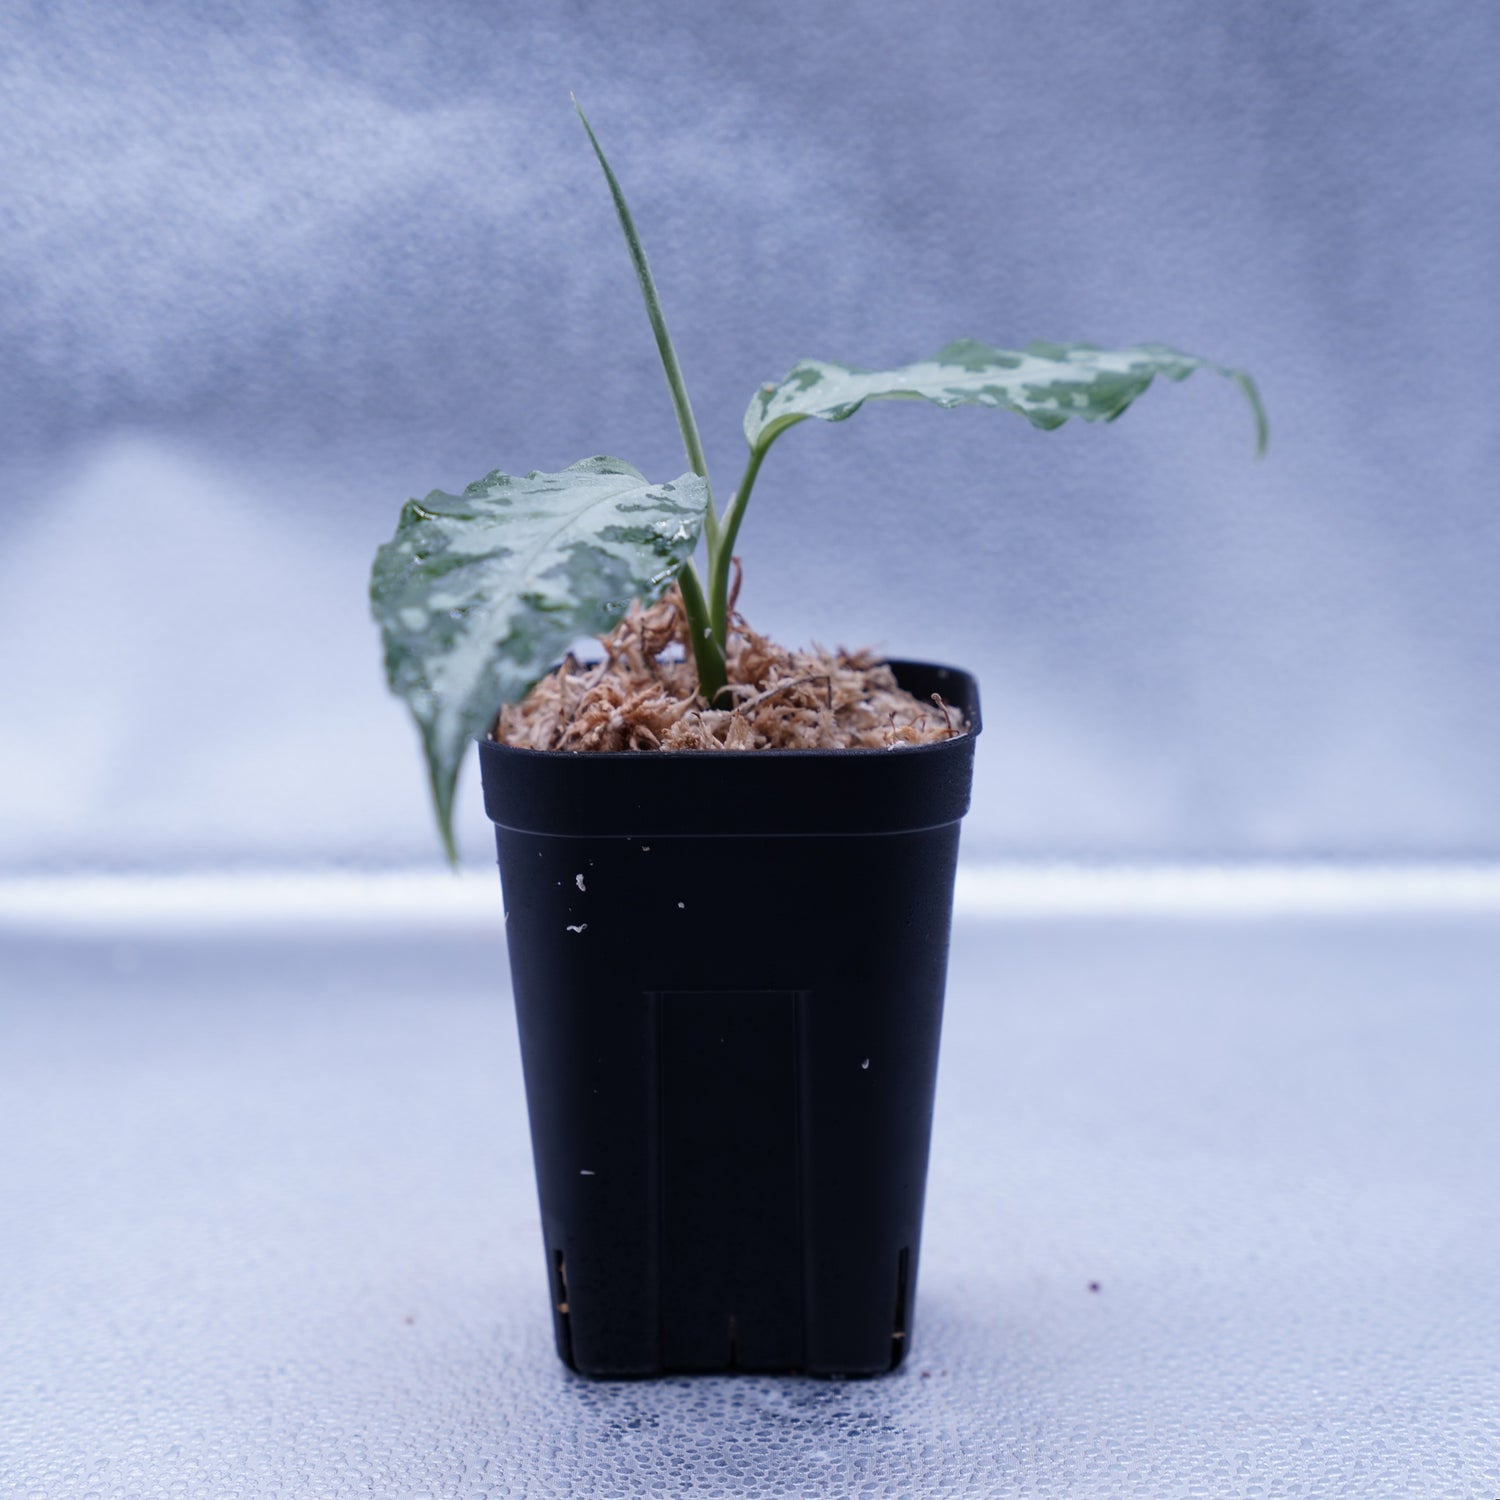 アグラオネマ ピクタム【T-021019-b-4】 Aglaonema pictum - 観葉植物